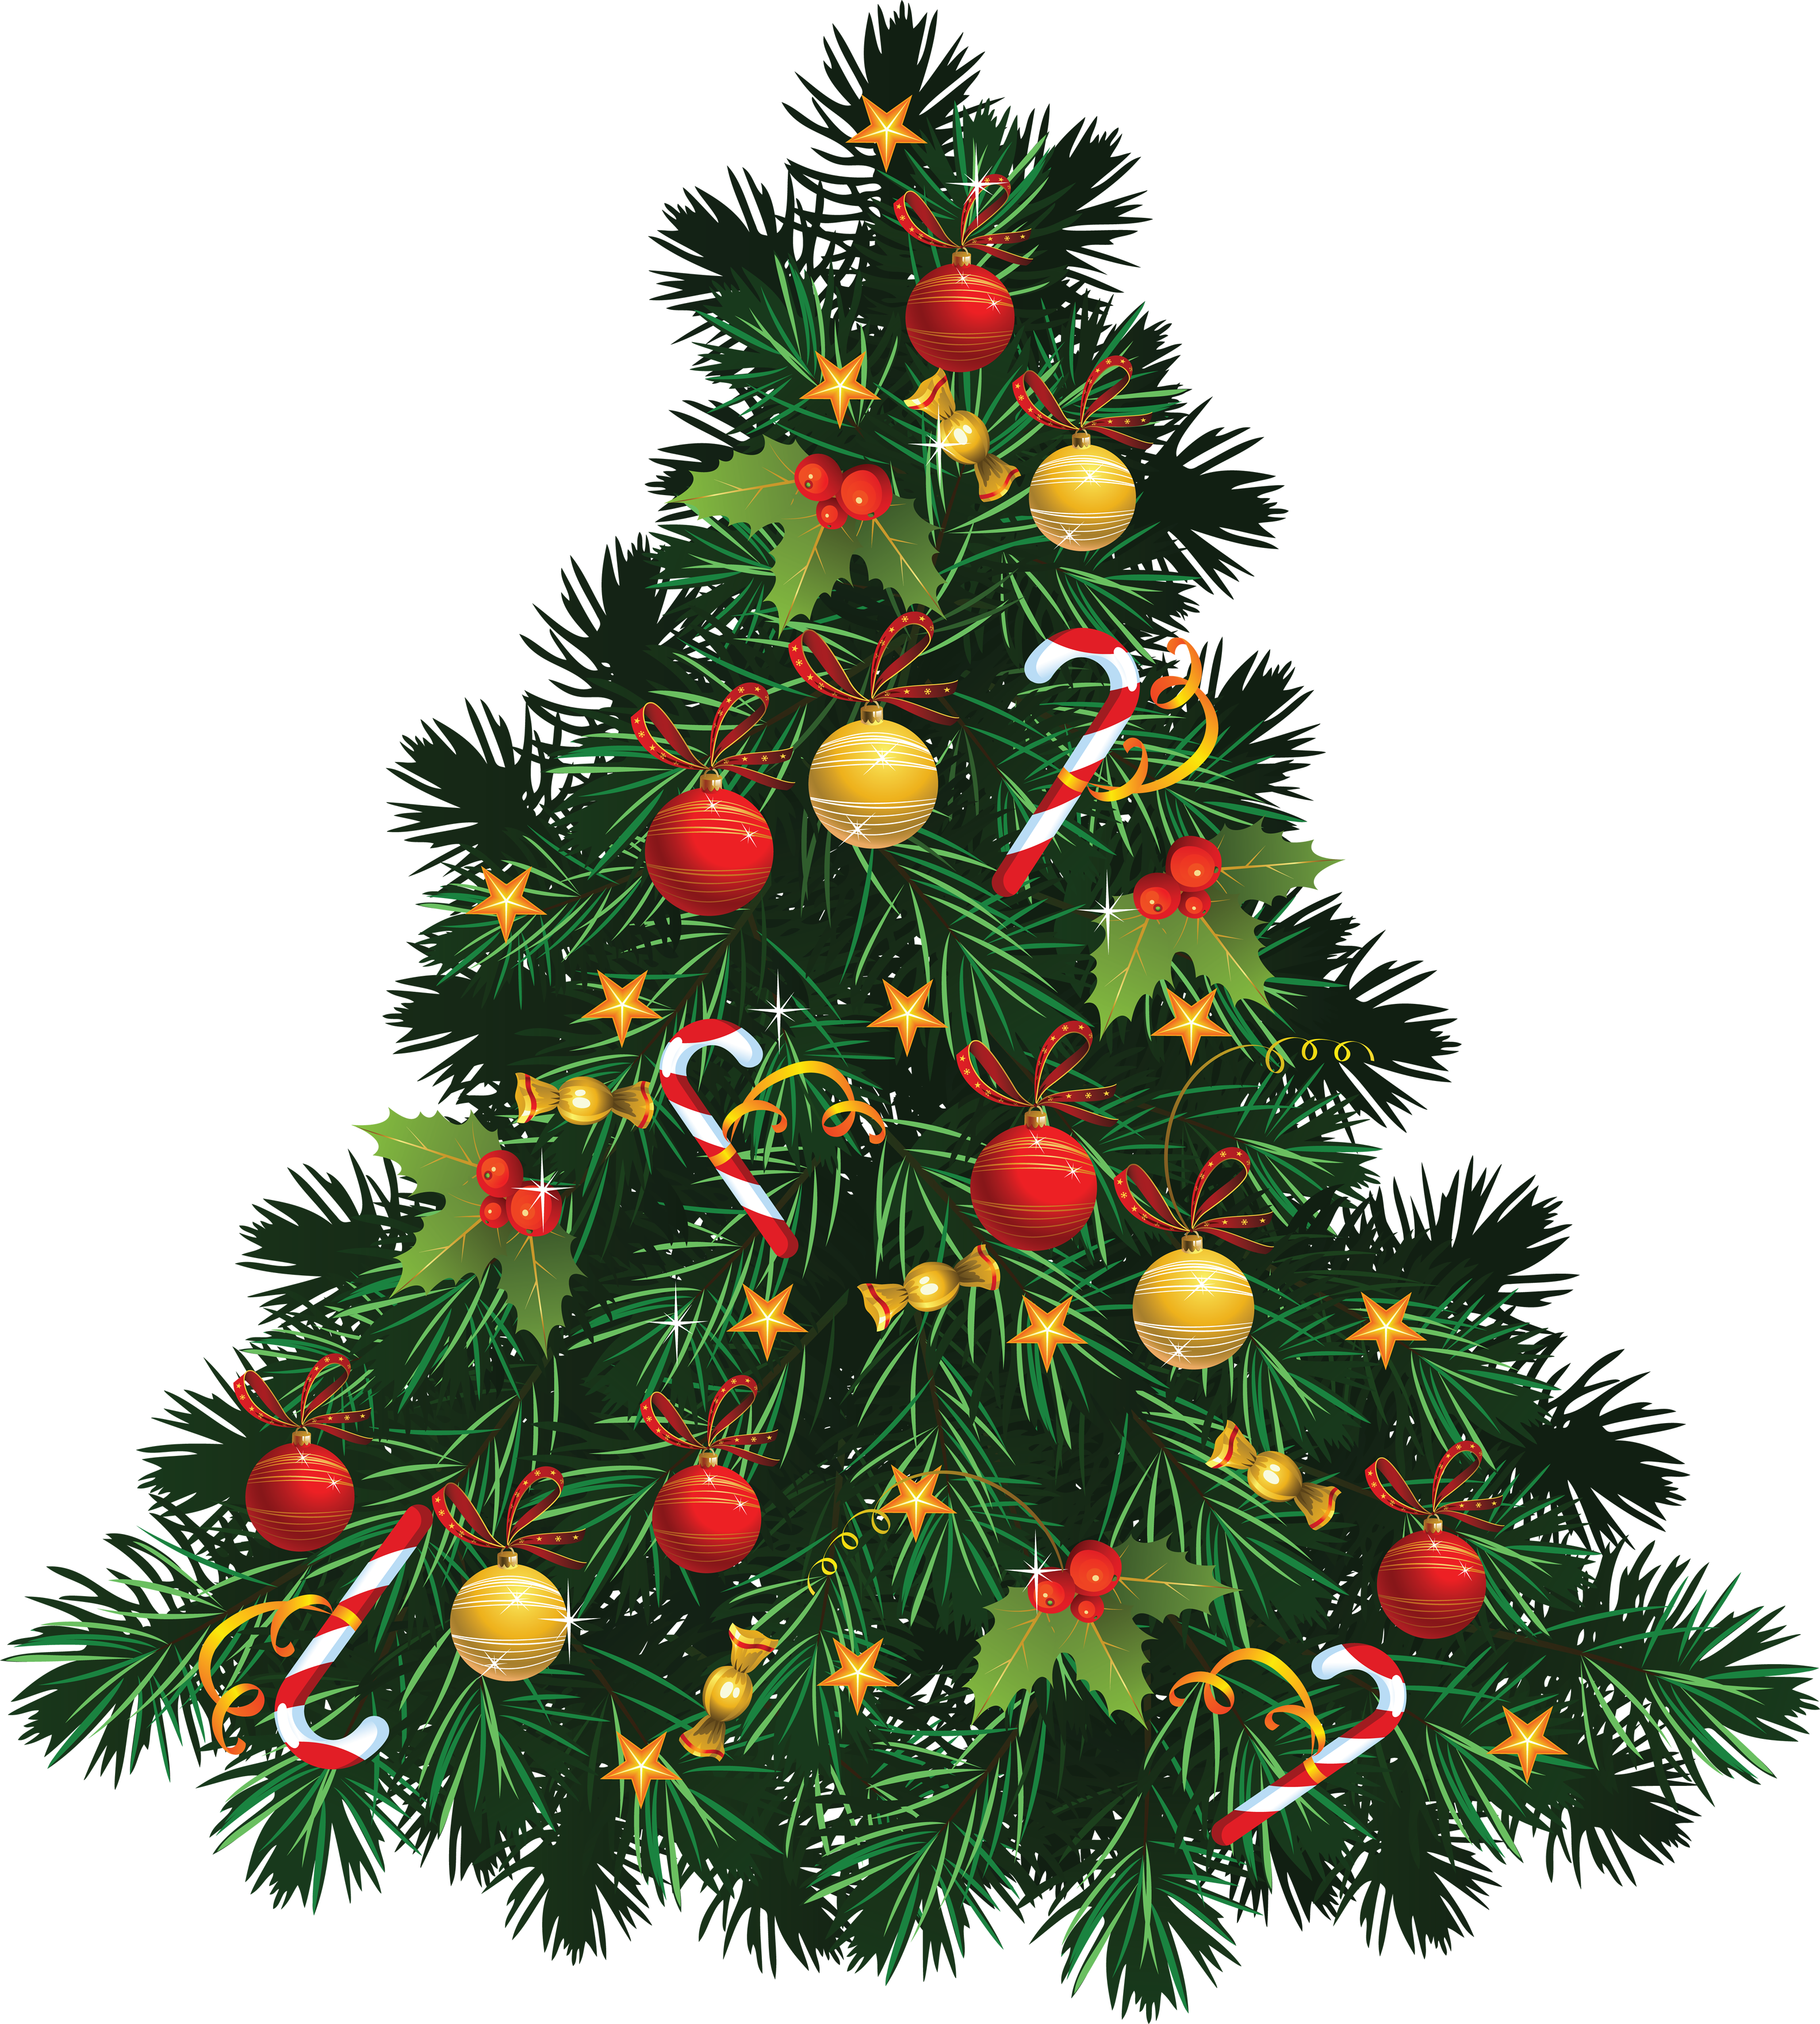 Noel köknar ağacı